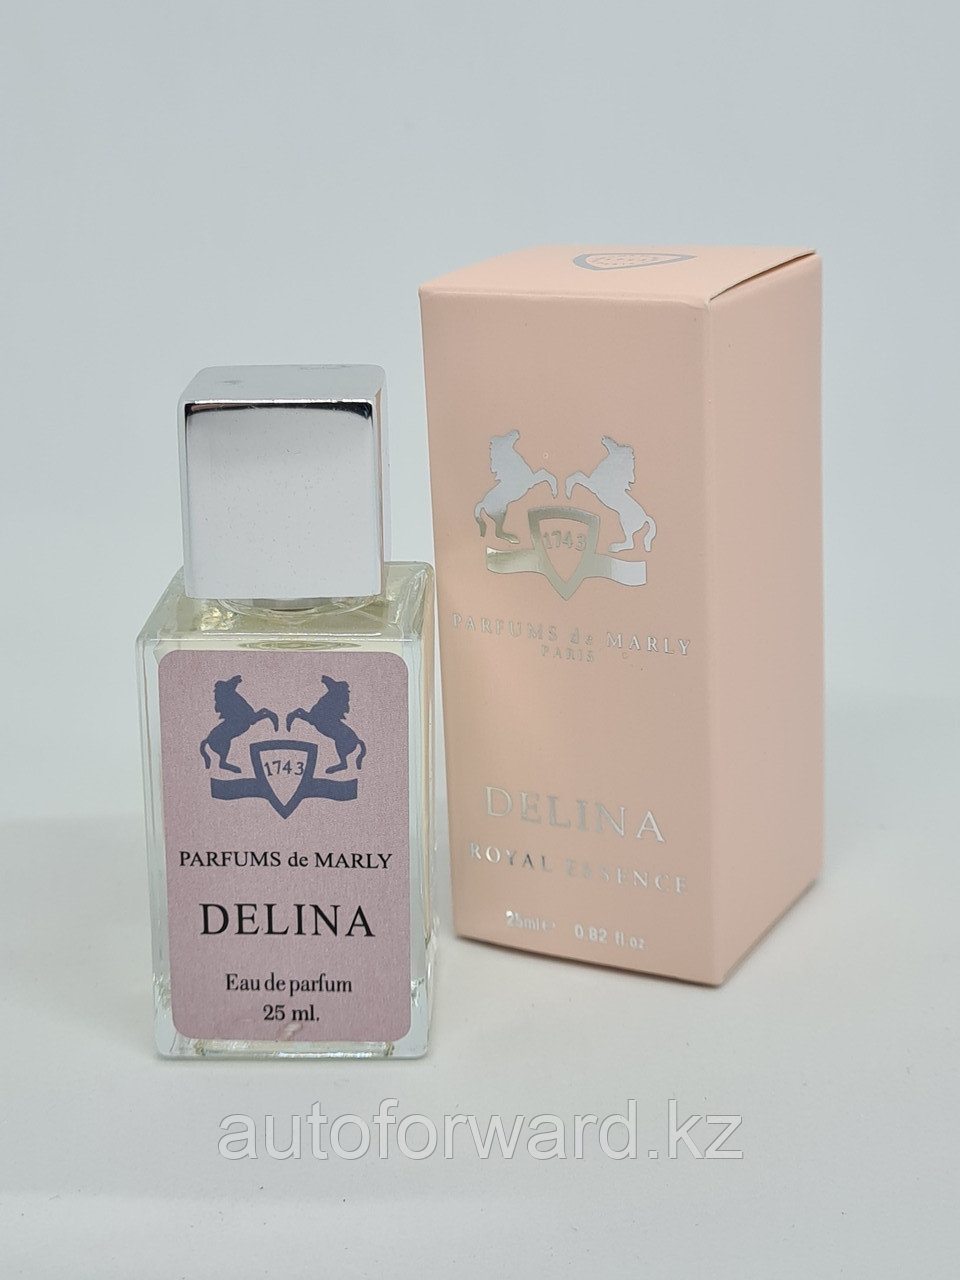 Delina parfums de Marly 25 ml